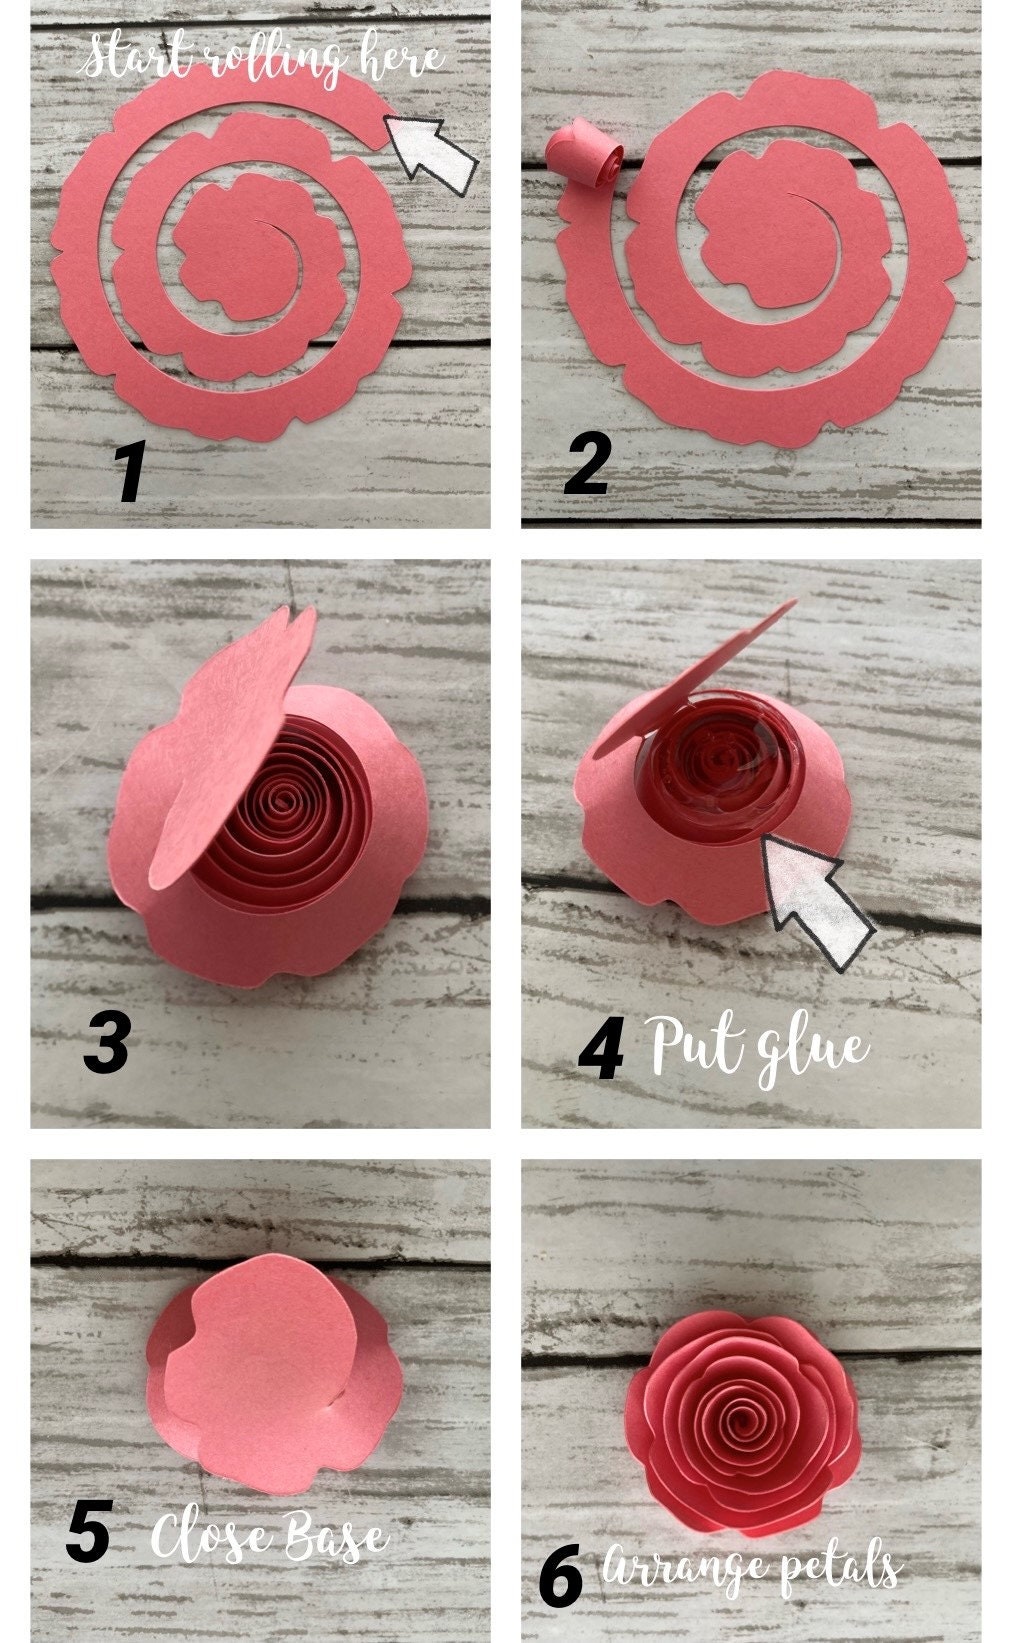 How to make paper flower? #giantflower #paperflower #rosepaper #homedecor # paper #paperflowers #white #diy #w…